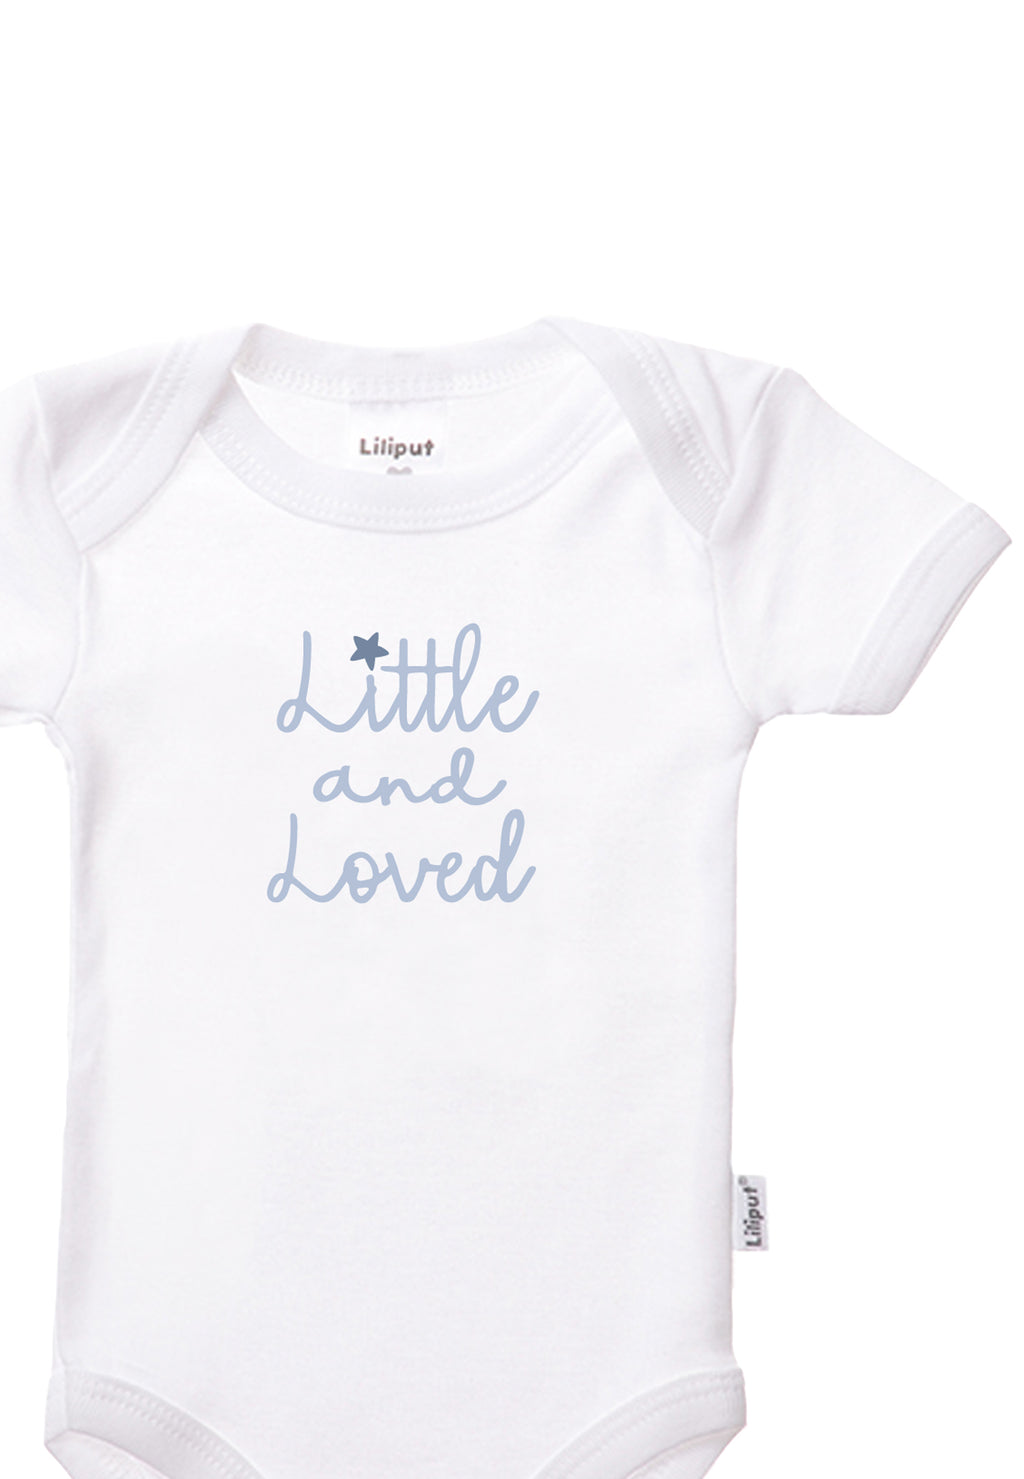 Babyset mit Kurzarm Body in weiß mit Print "little and loved", Umschlagmütze in weiß, 2 Paar Socken in zarten blau Farbtönen und einer Musselindecke in hellblau-